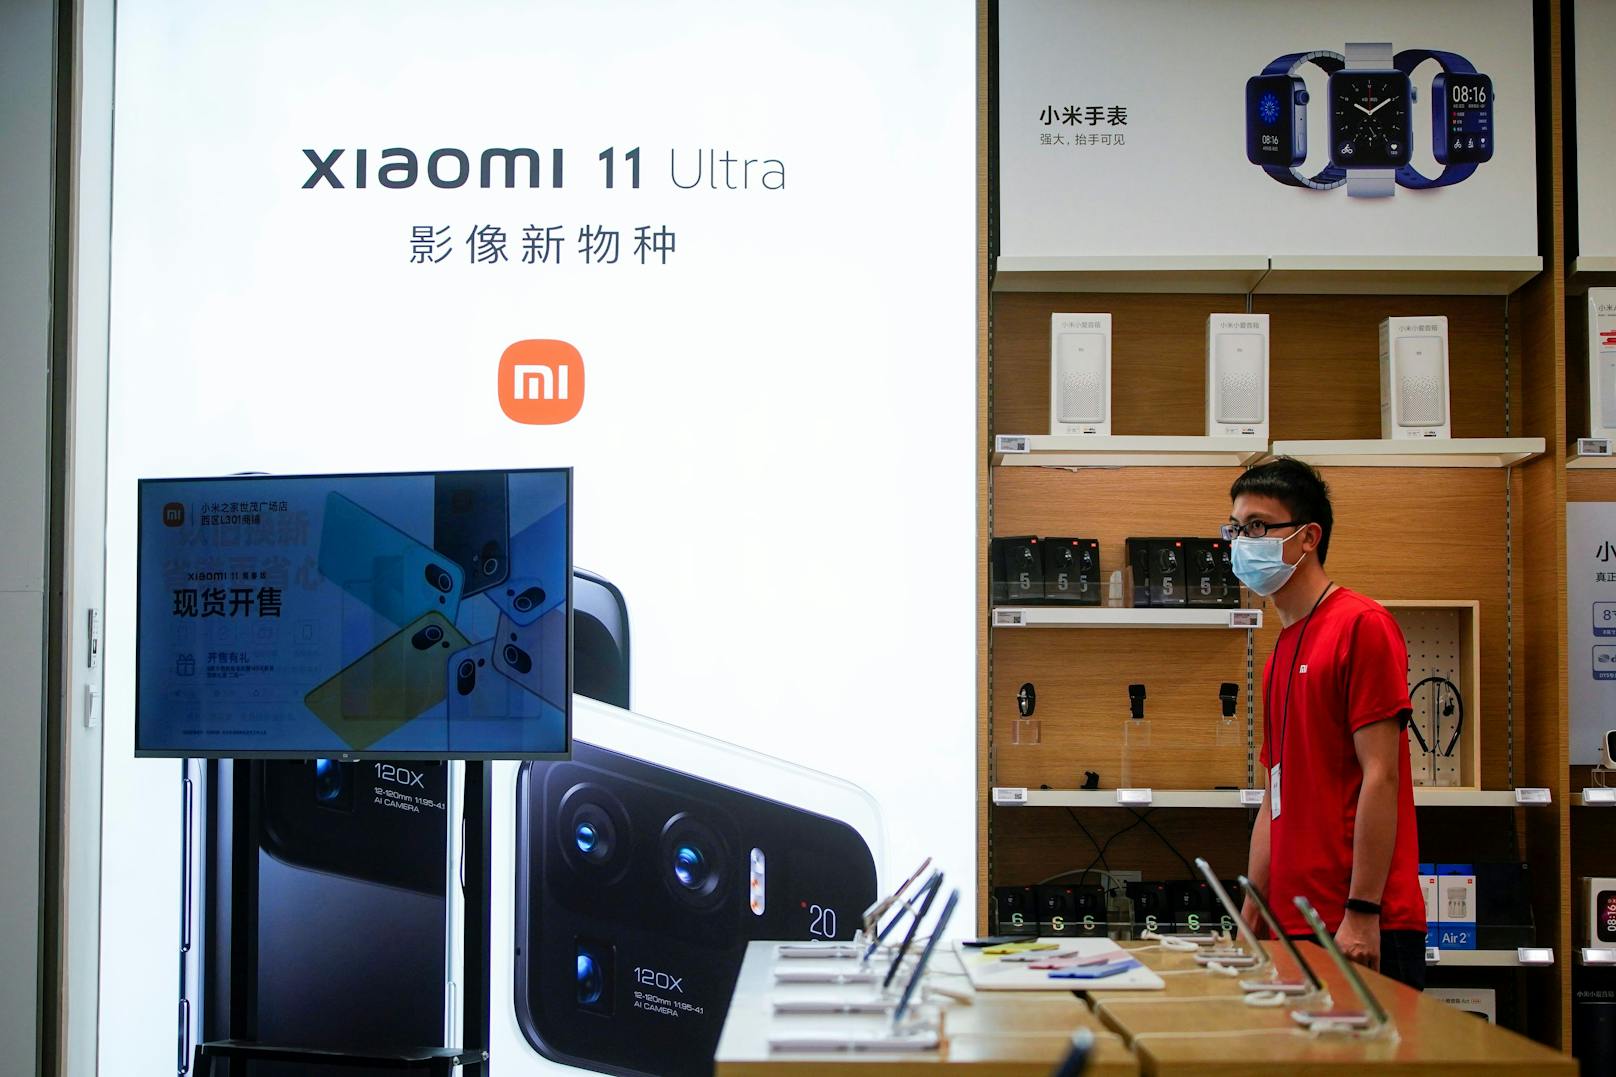 Ab dem 3. Quartal 2021 wird die Xiaomi-Produktreihe "Mi" in "Xiaomi" umbenannt.